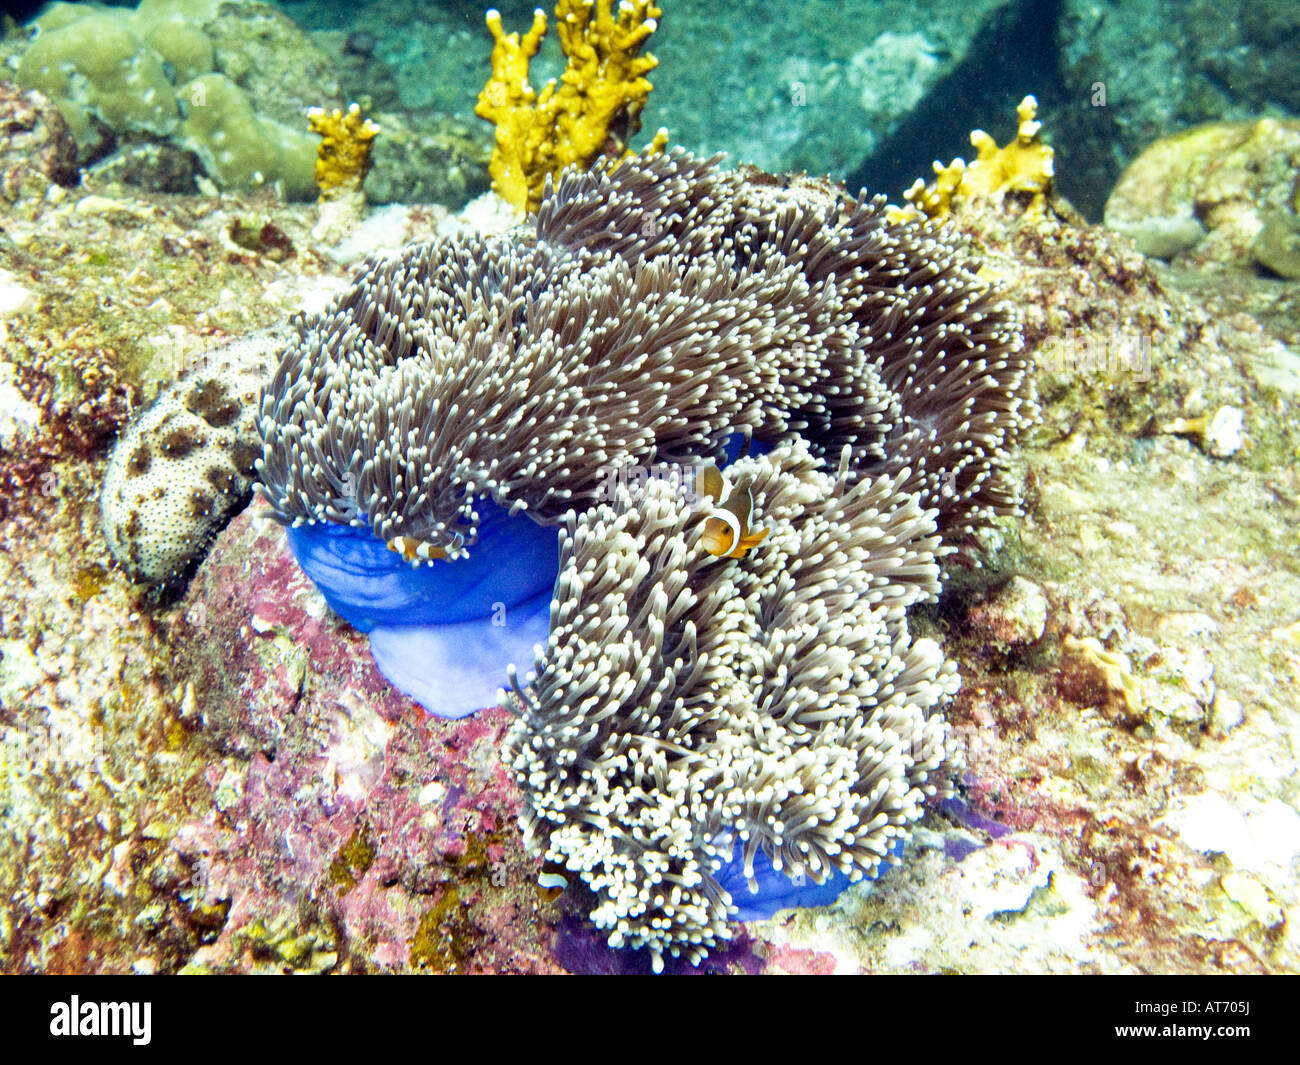 Anemonenfisch in blauen herrliche Seeanemone, Heteractis magnifica Stockfoto